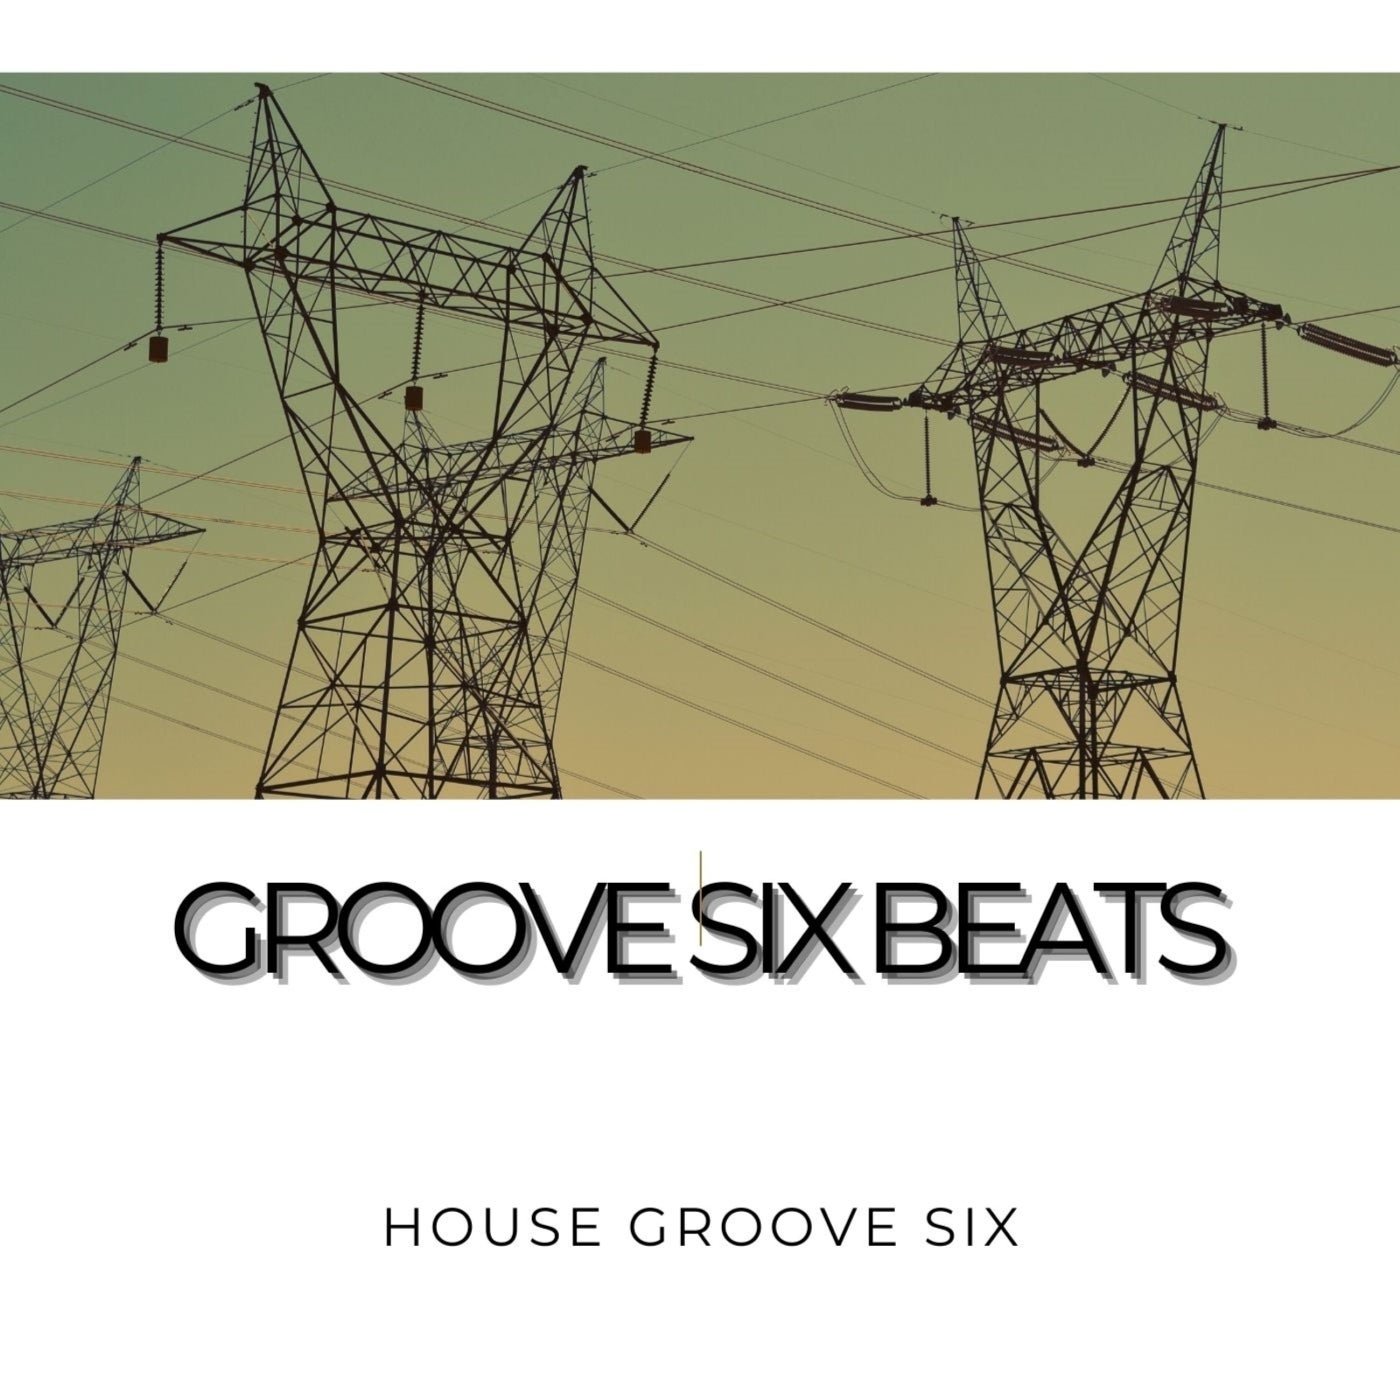 Groove Six Beats 1